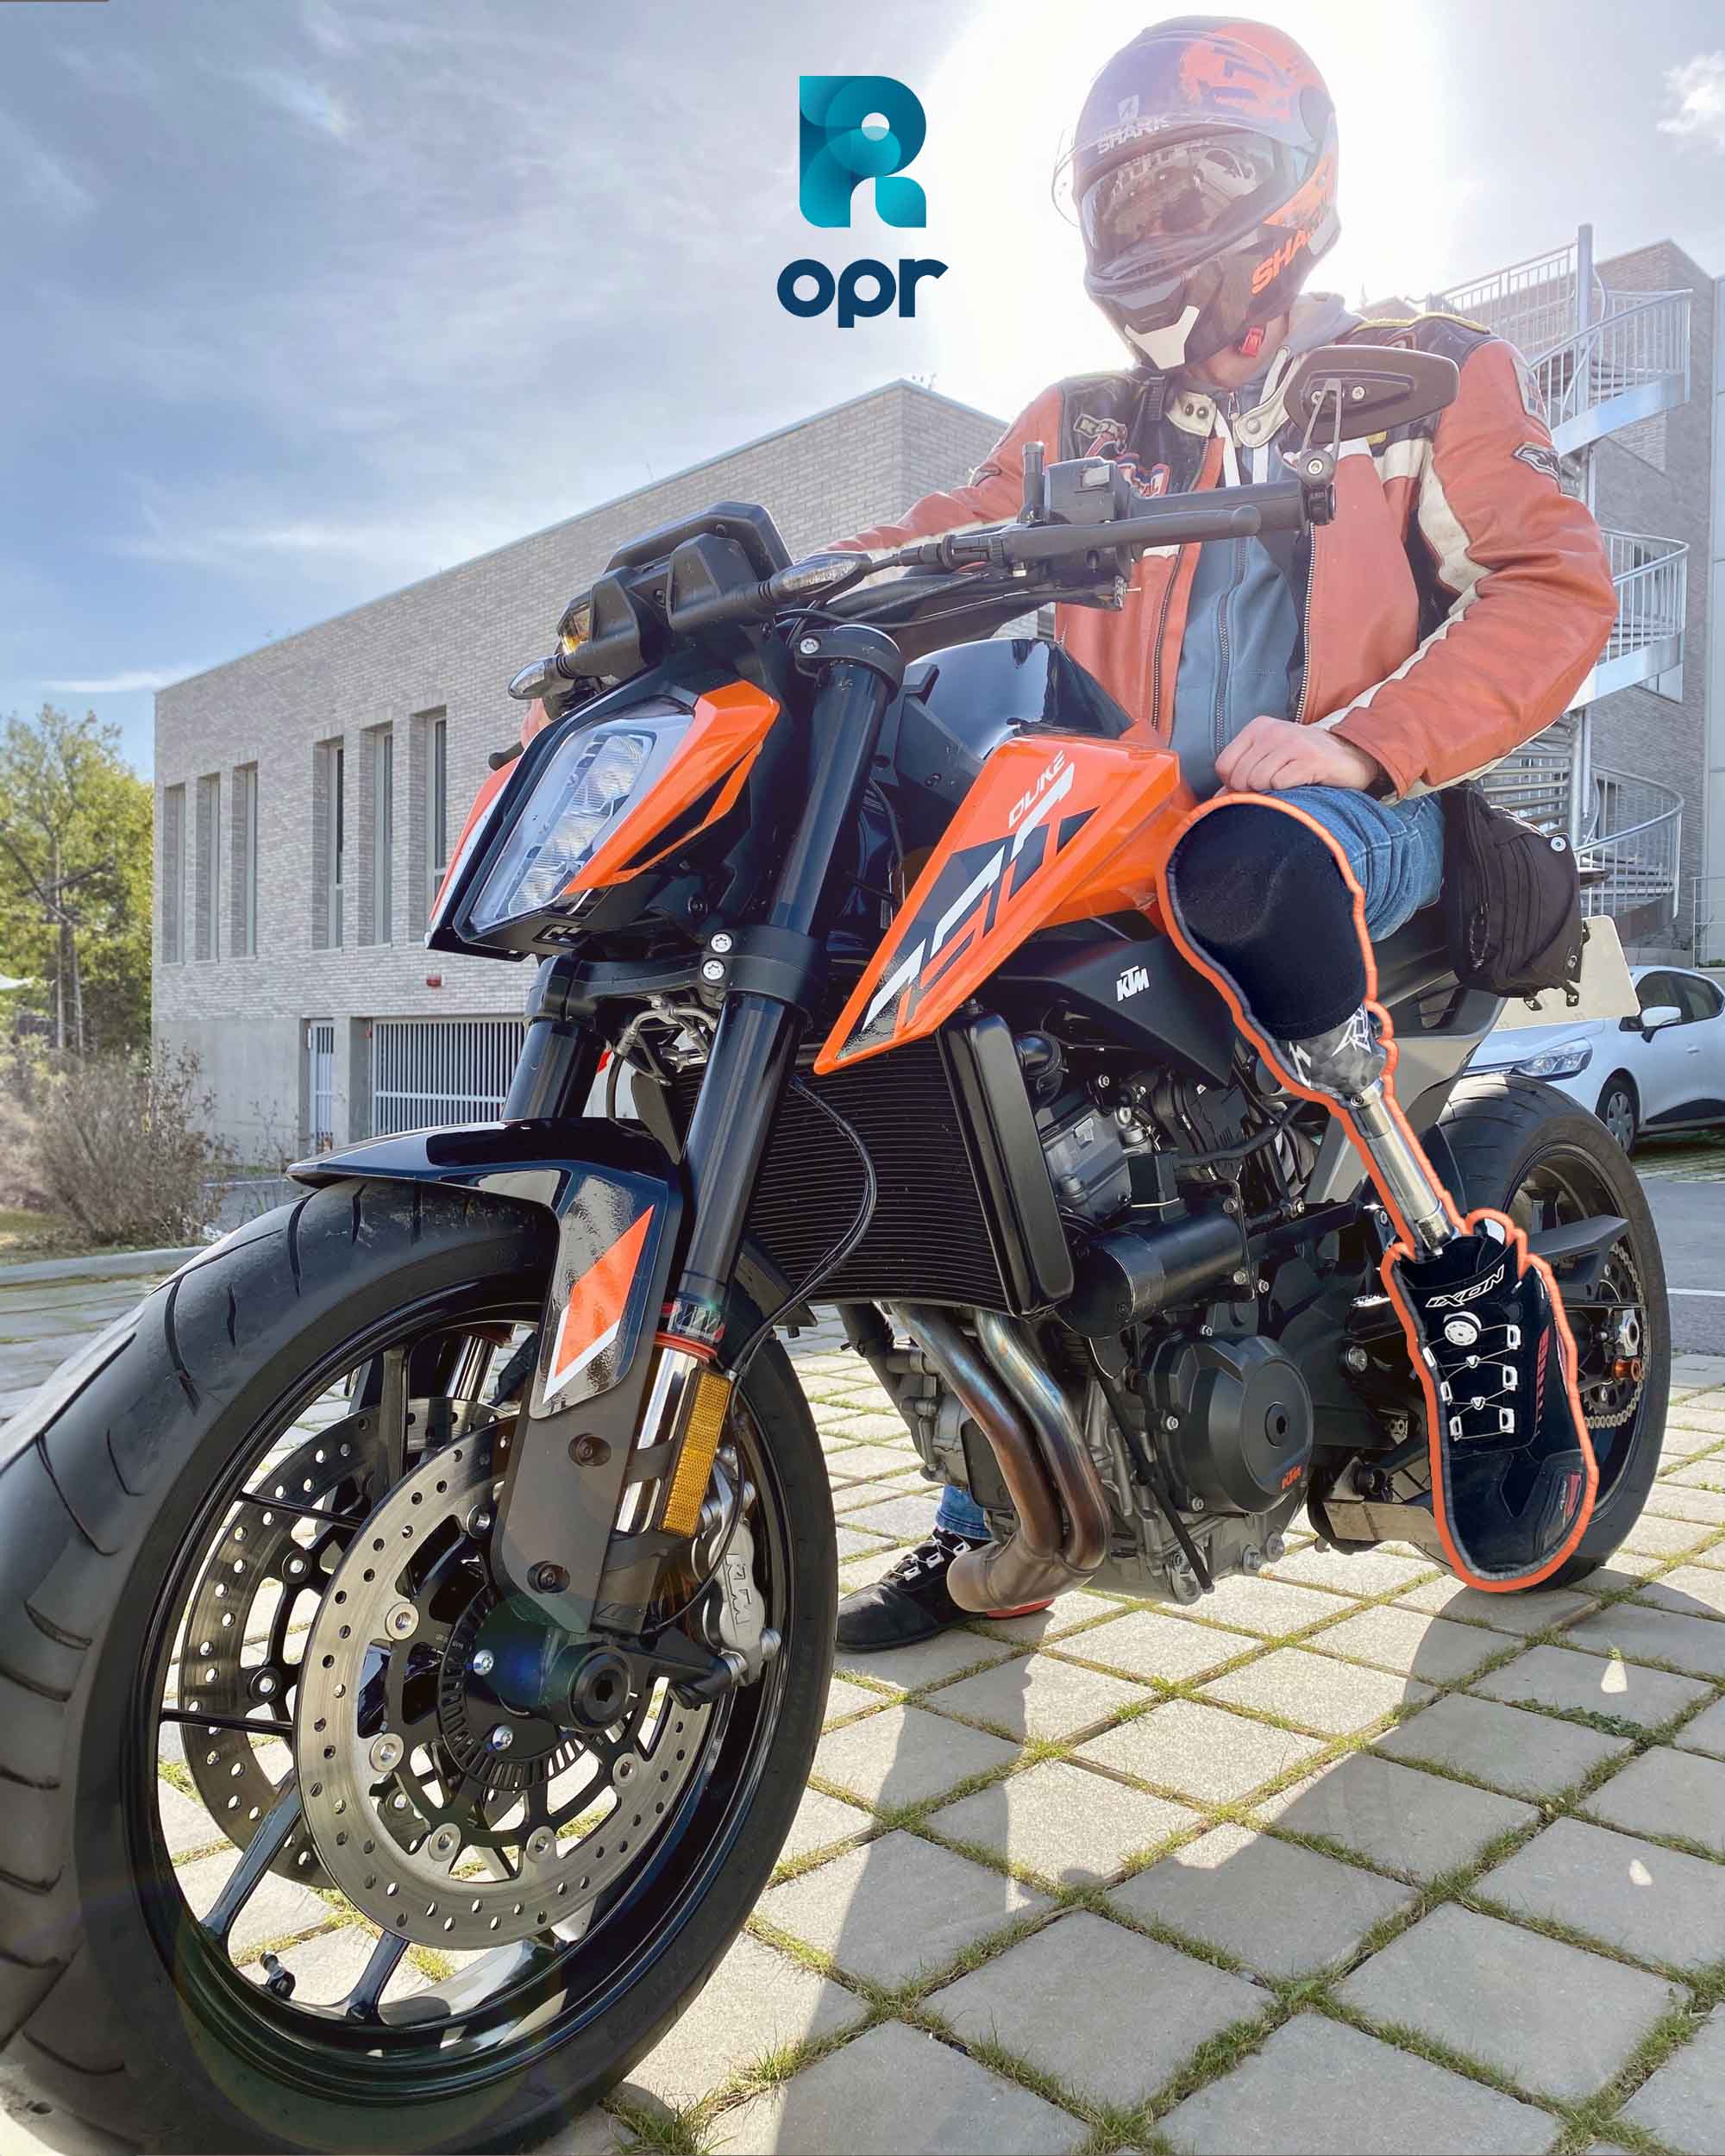 frédéric amputé tibial sur sa moto orange